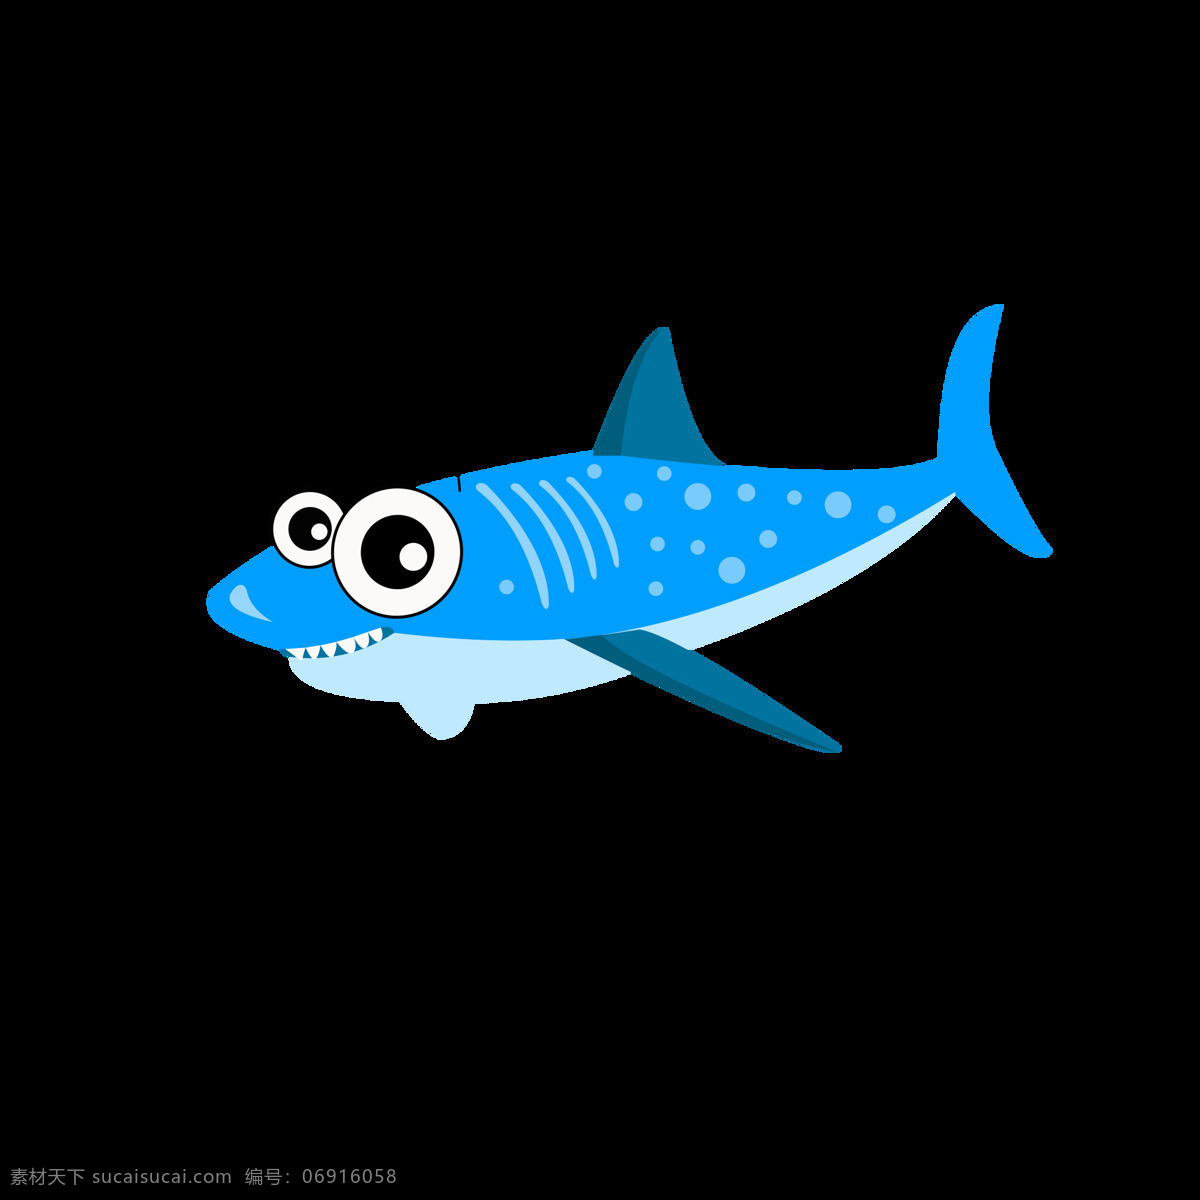 卡通 可爱 海底 动物 元素 卡通可爱 海底世界 元素设计 鲨鱼